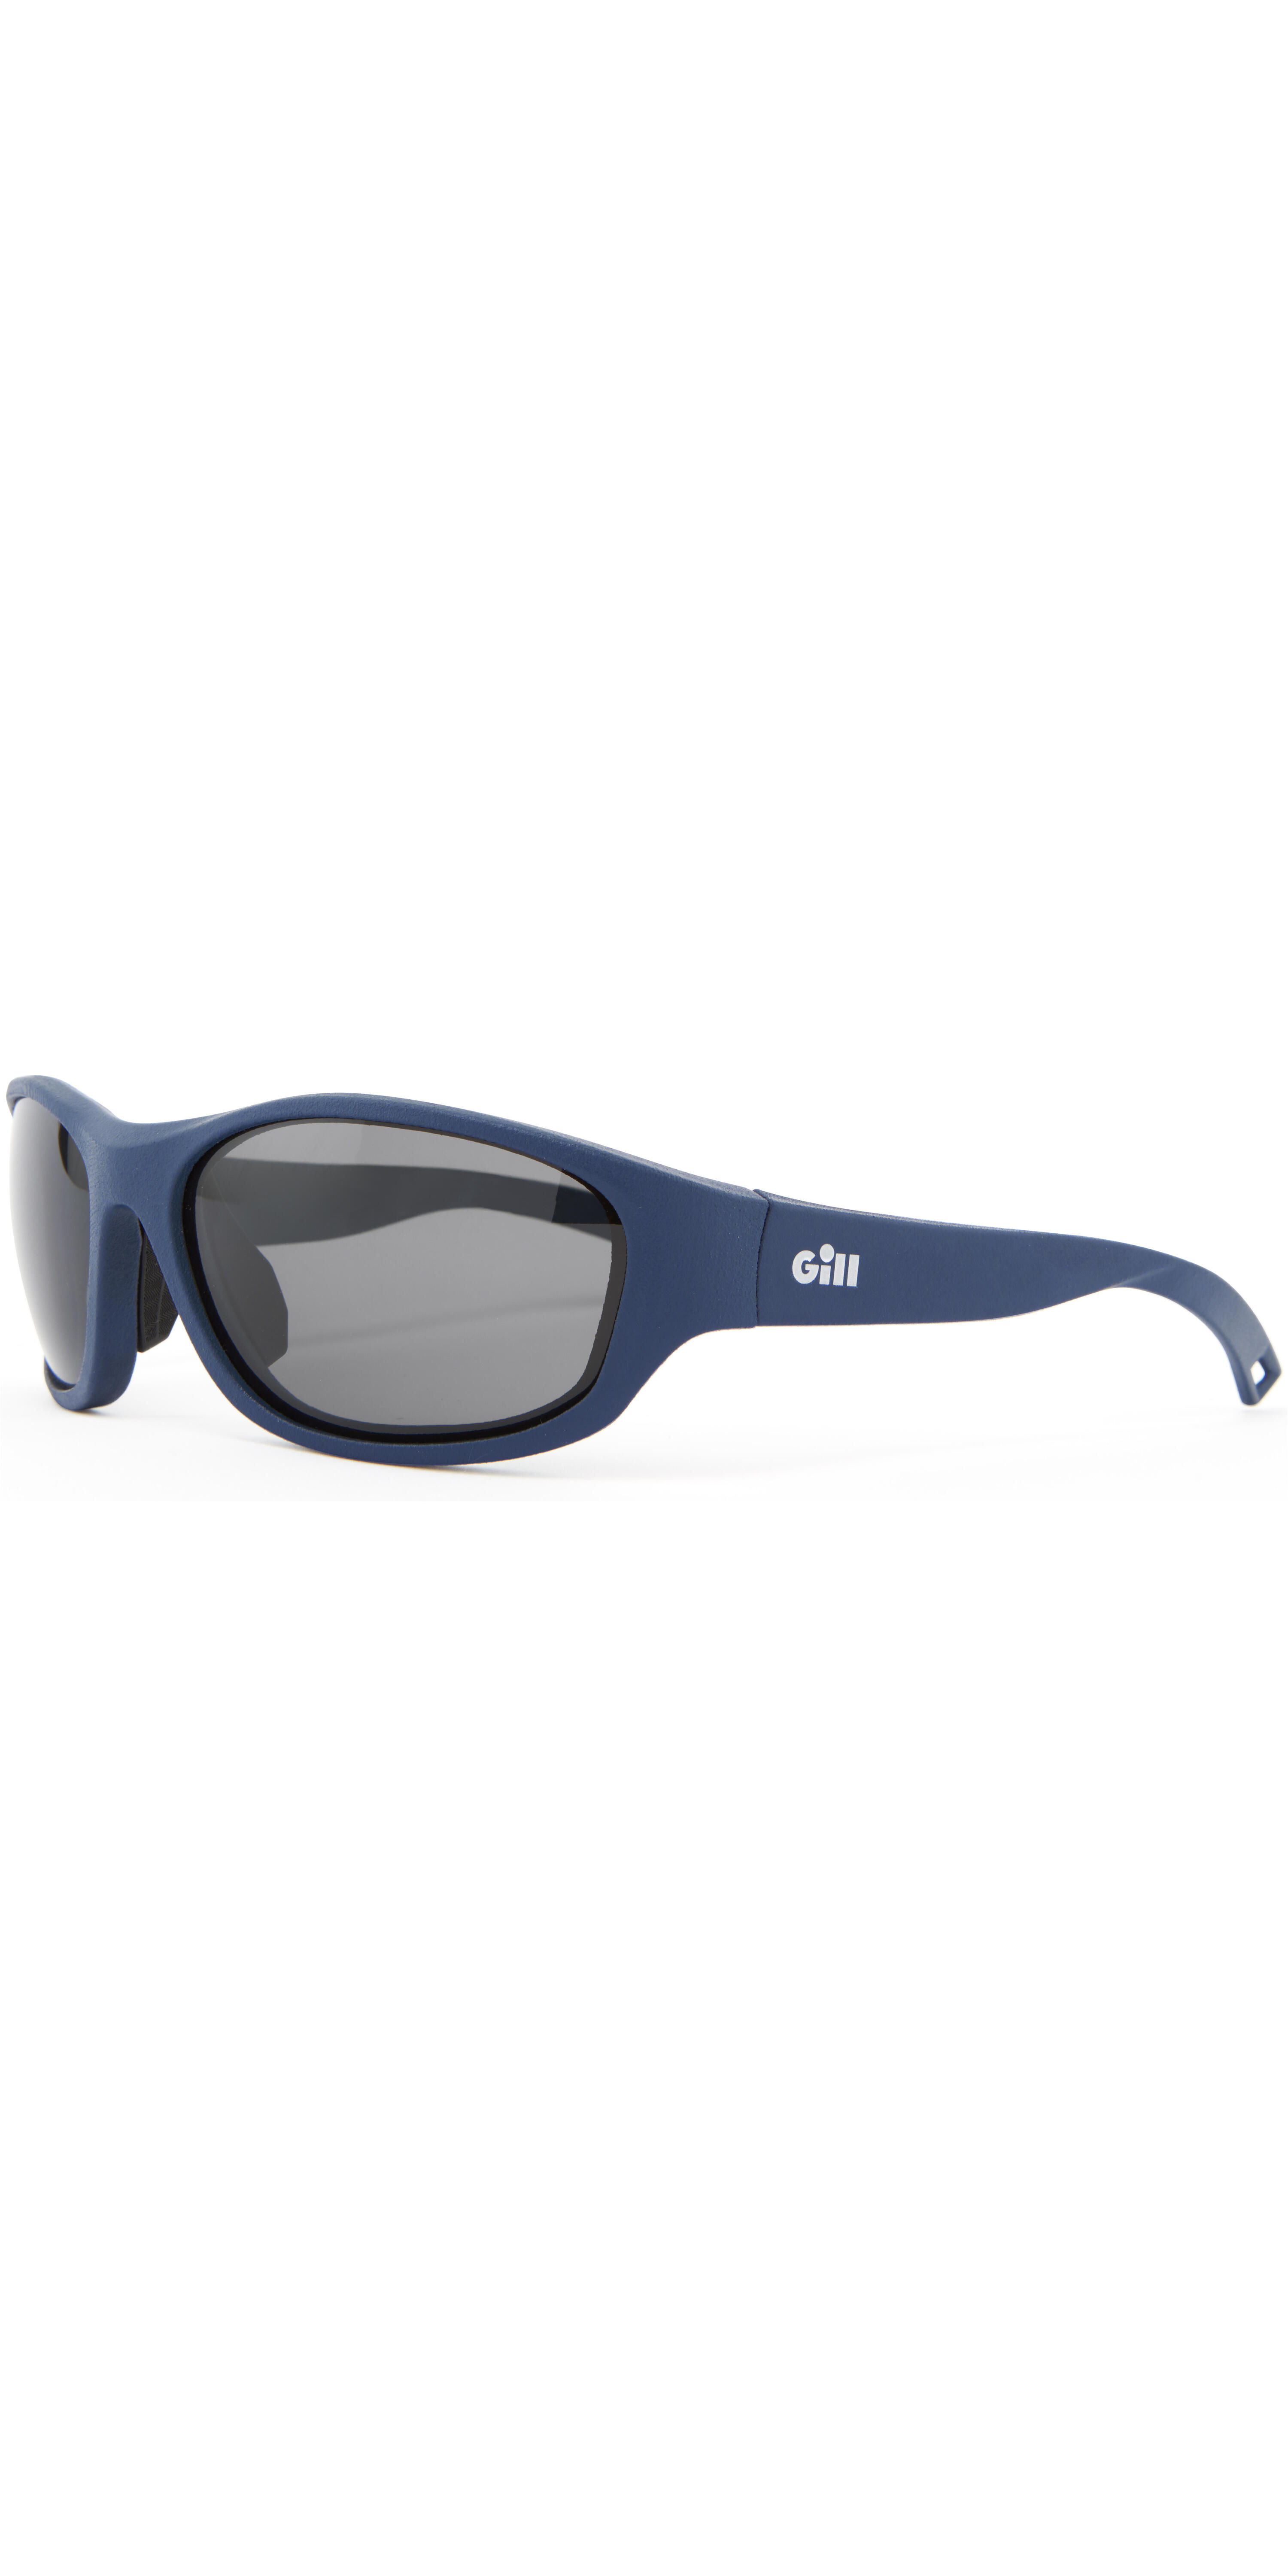 Gill Classic Sunglasses 2/2